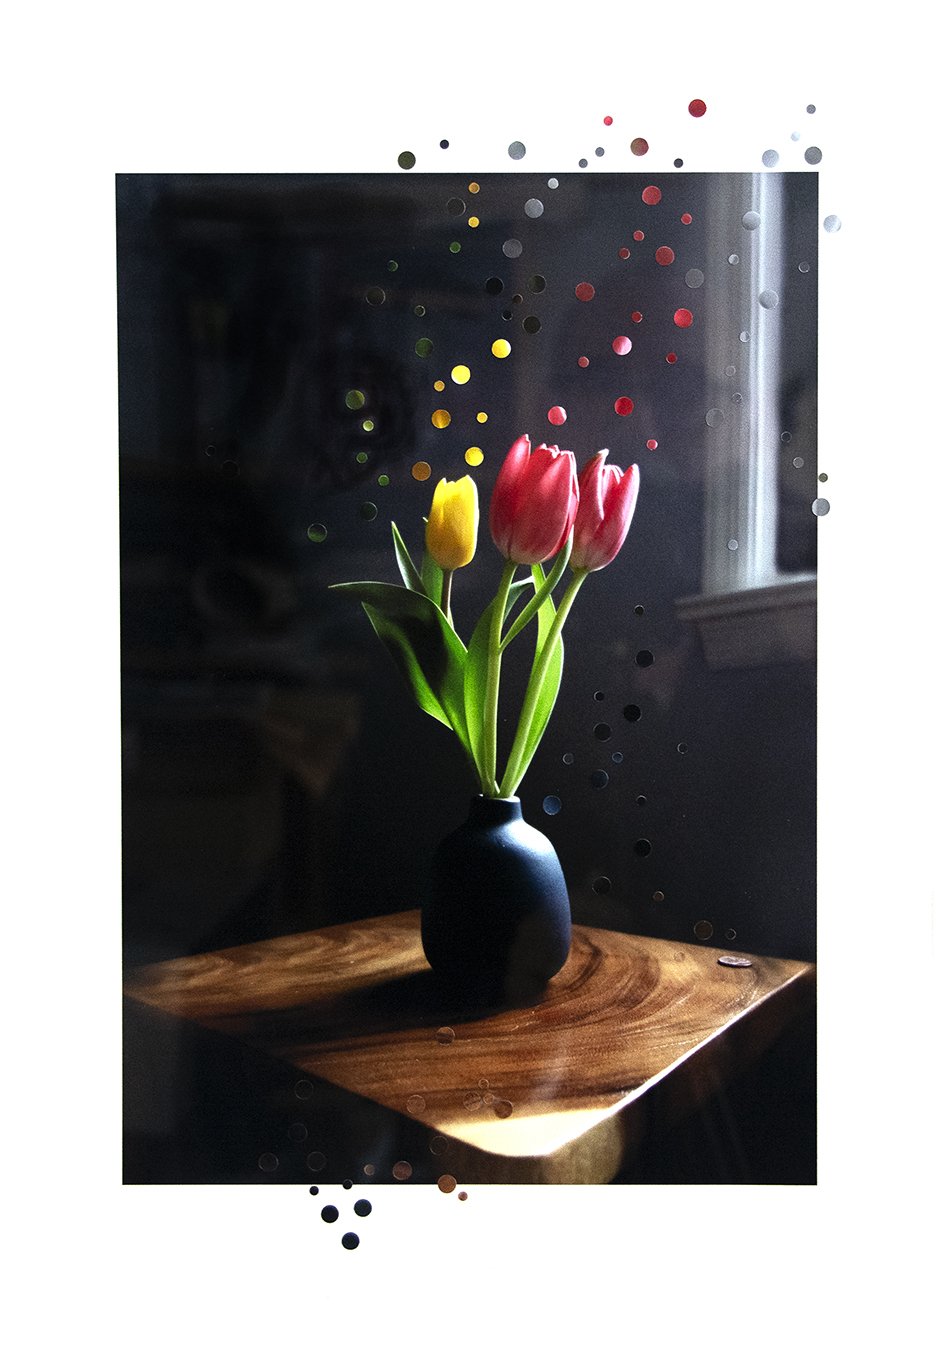 Michelle's Tulips 2